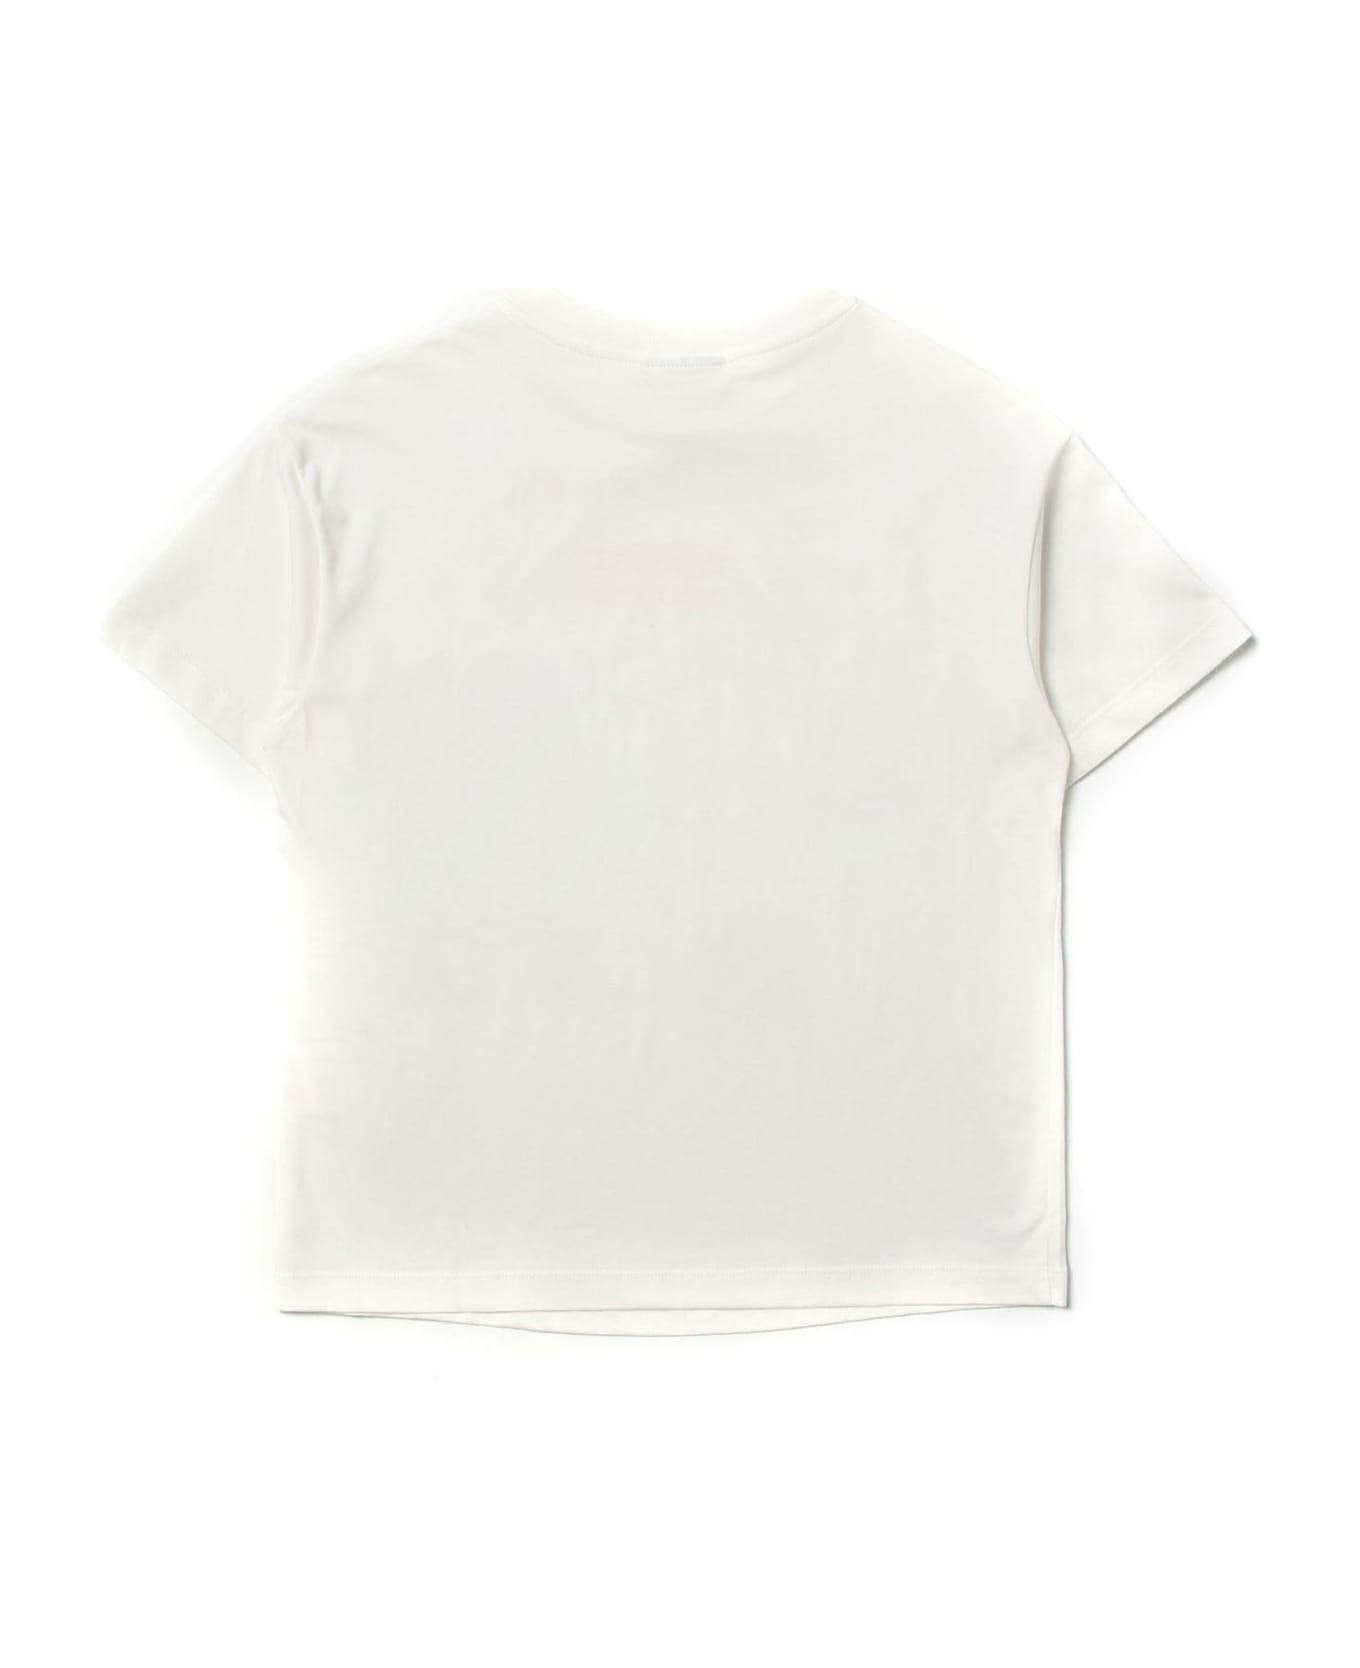 Fendi White Cotton Tshirt - Gesso